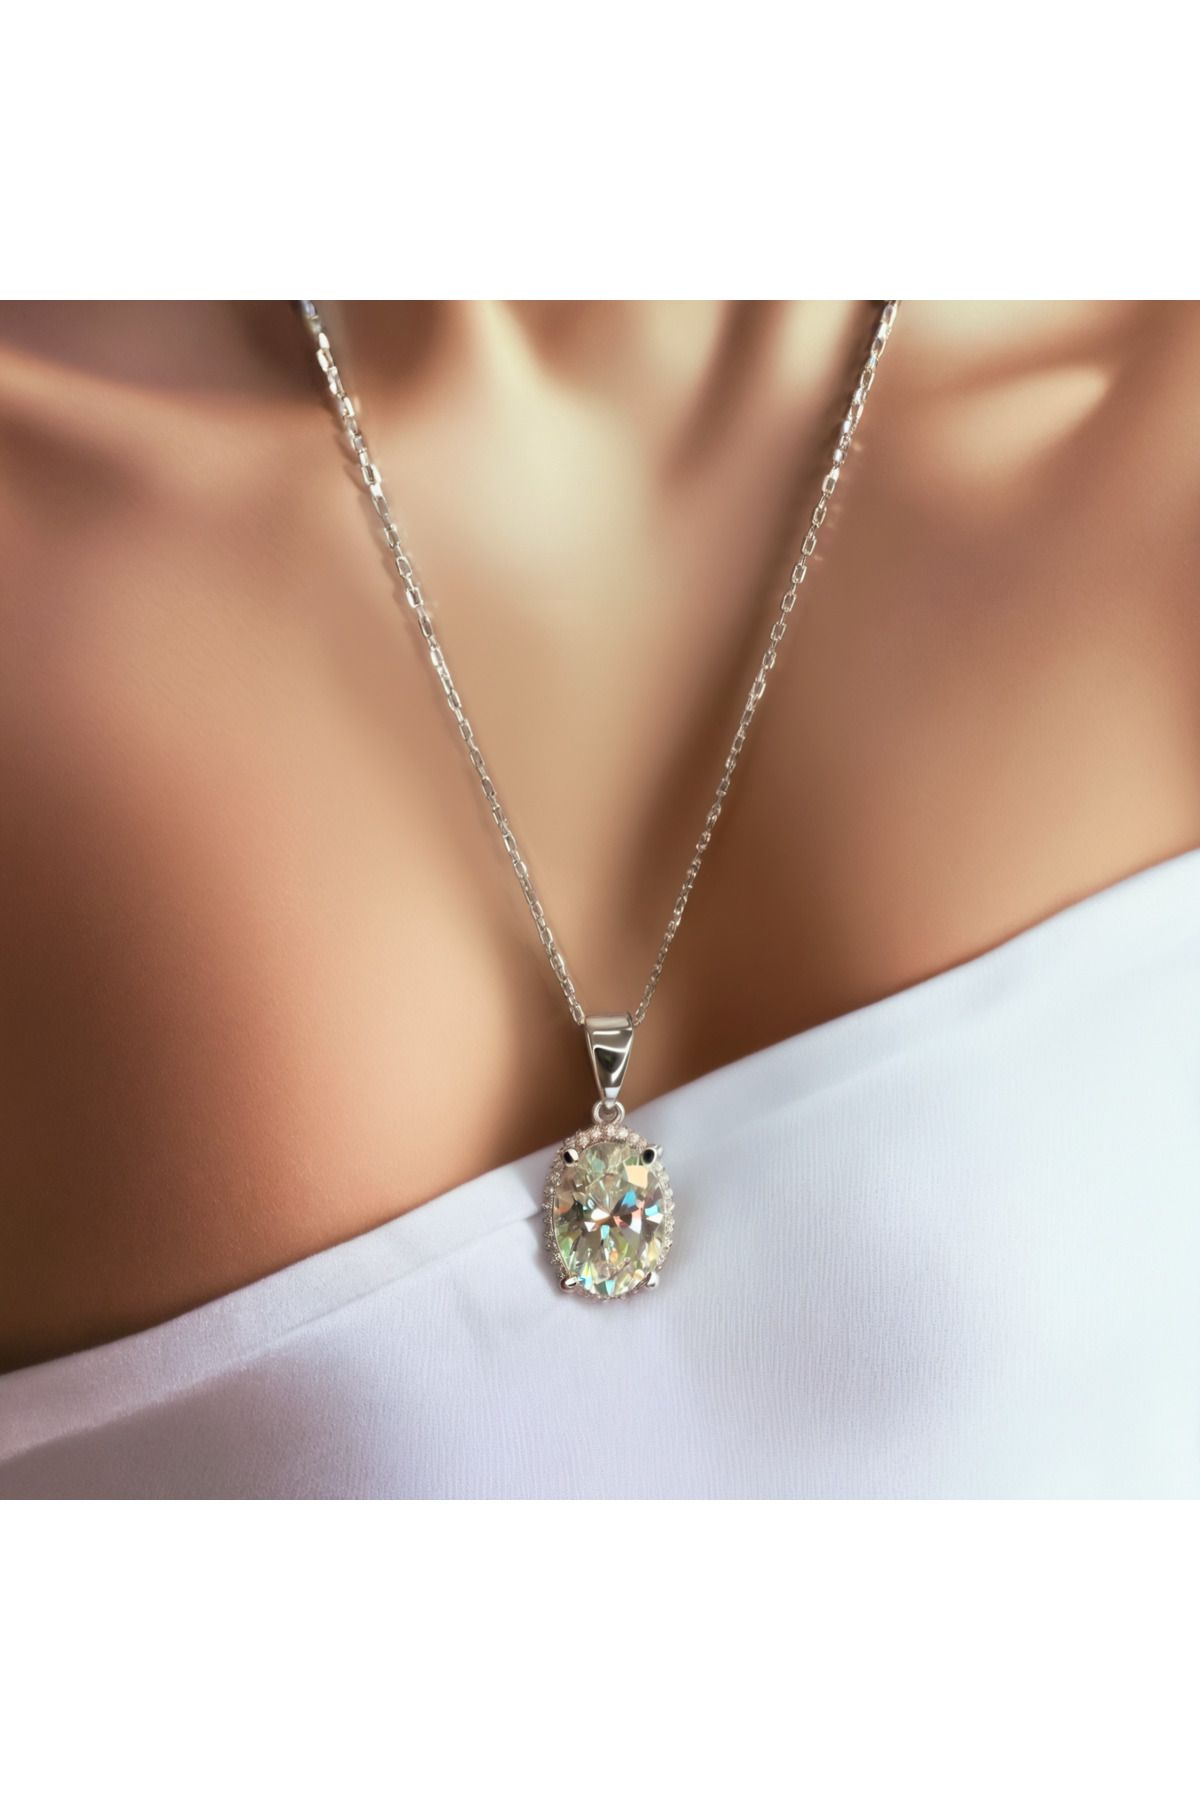 LİDYAWORLD Sky Diamond Oval Taşlı Damla Etrafı Taş işlemeli 925 Ayar Gümüş Kadın Kolye- Lüks ve Modern Tasarım